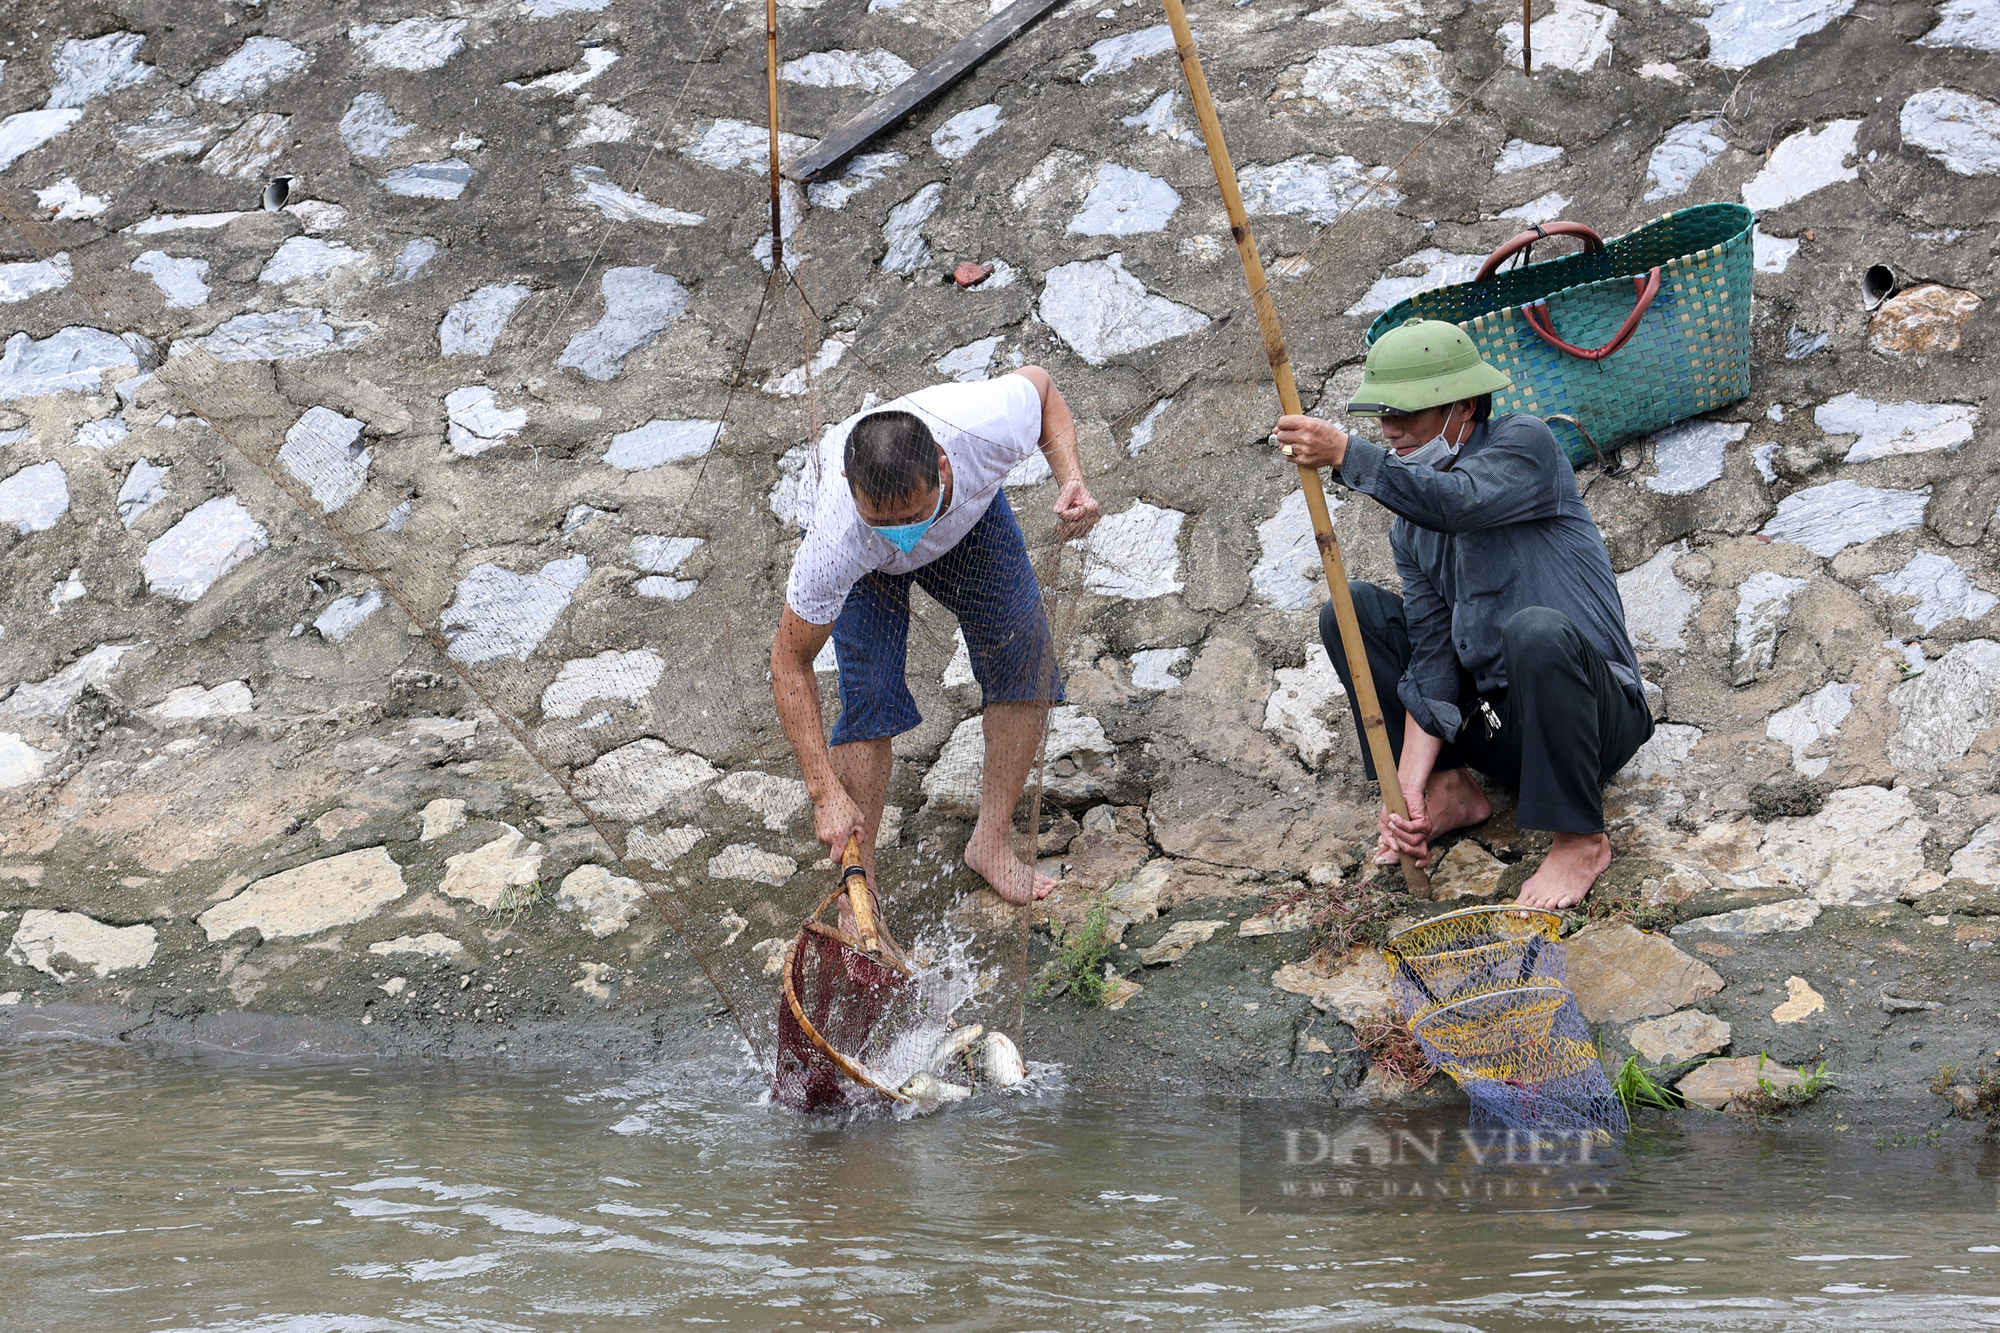 Bất chấp lệnh cấm, người dân tụ tập đánh cá trên sông Tô Lịch - Ảnh 2.